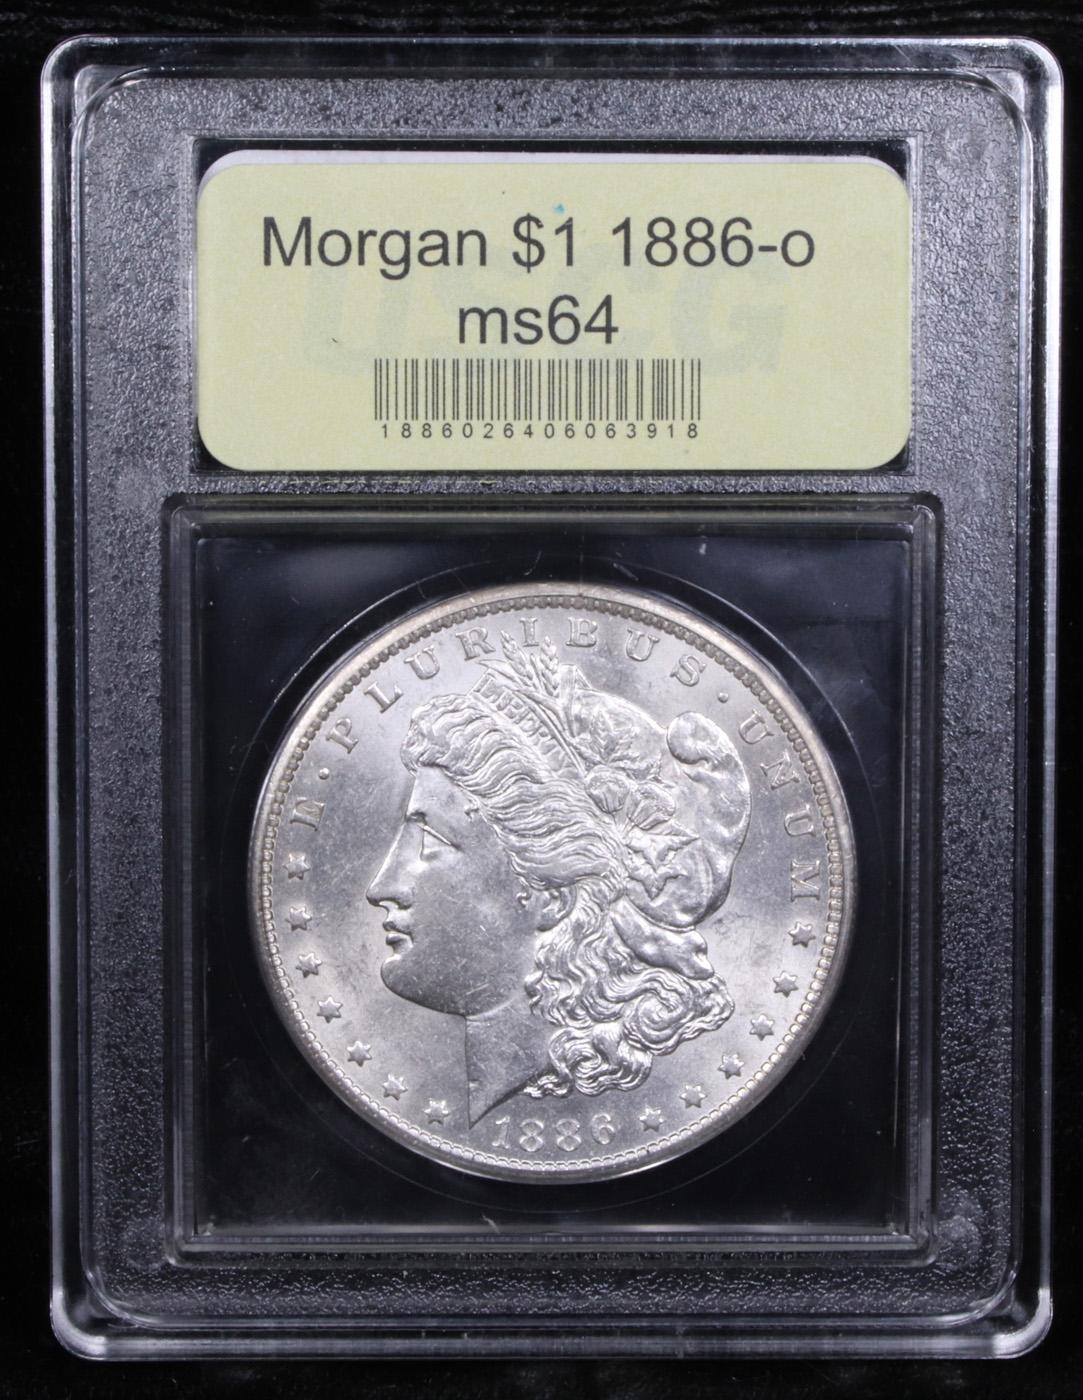 ***Auction Highlight*** 1886-o Morgan Dollar $1 Graded Choice Unc BY USCG (fc)